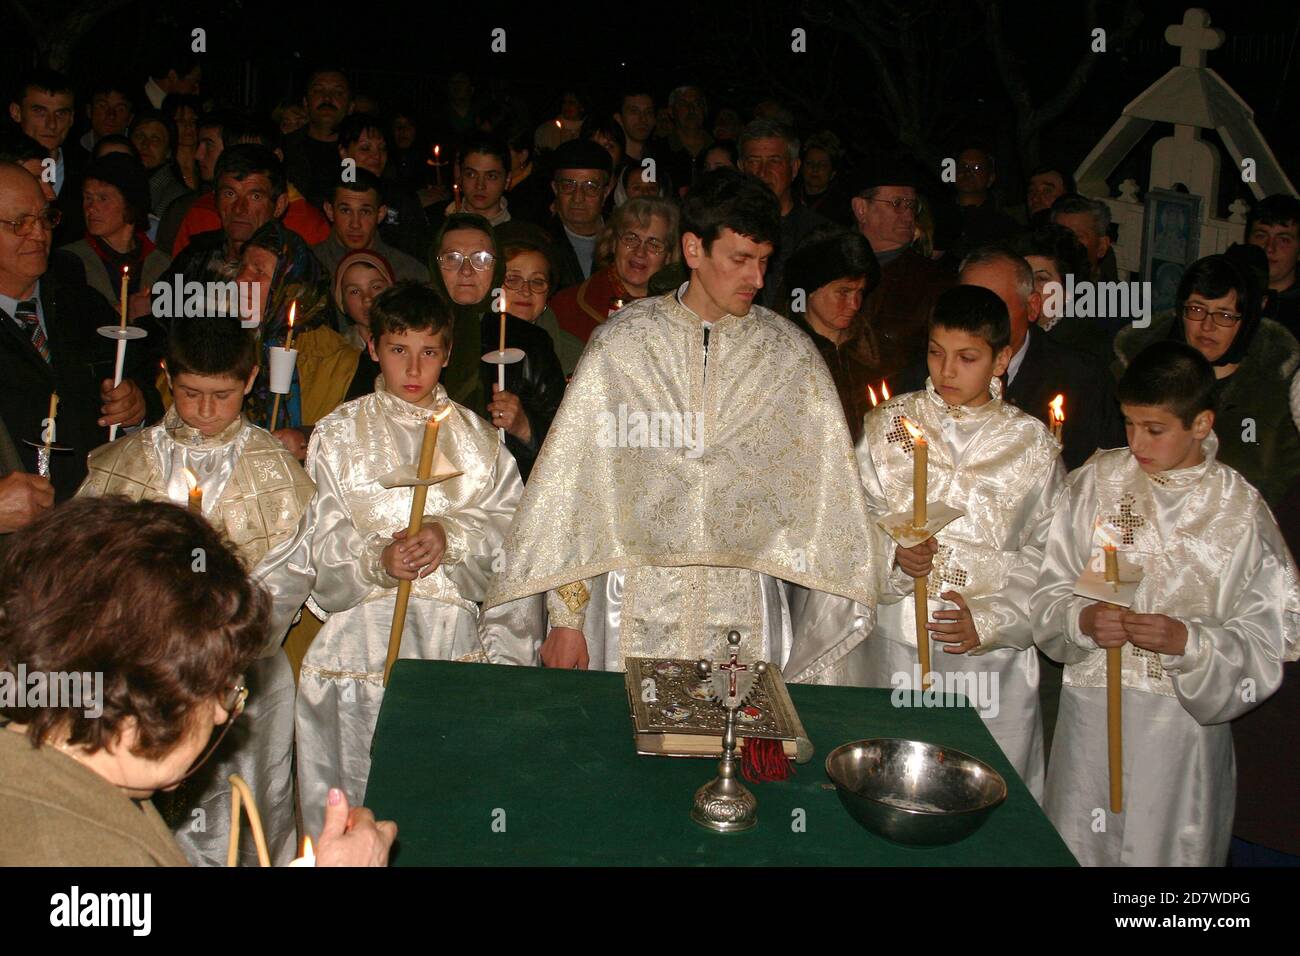 Service de Pâques en soirée dans une église chrétienne orthodoxe en Roumanie. Croyants tenant le feu Saint célébrant la Résurrection du Christ. Banque D'Images